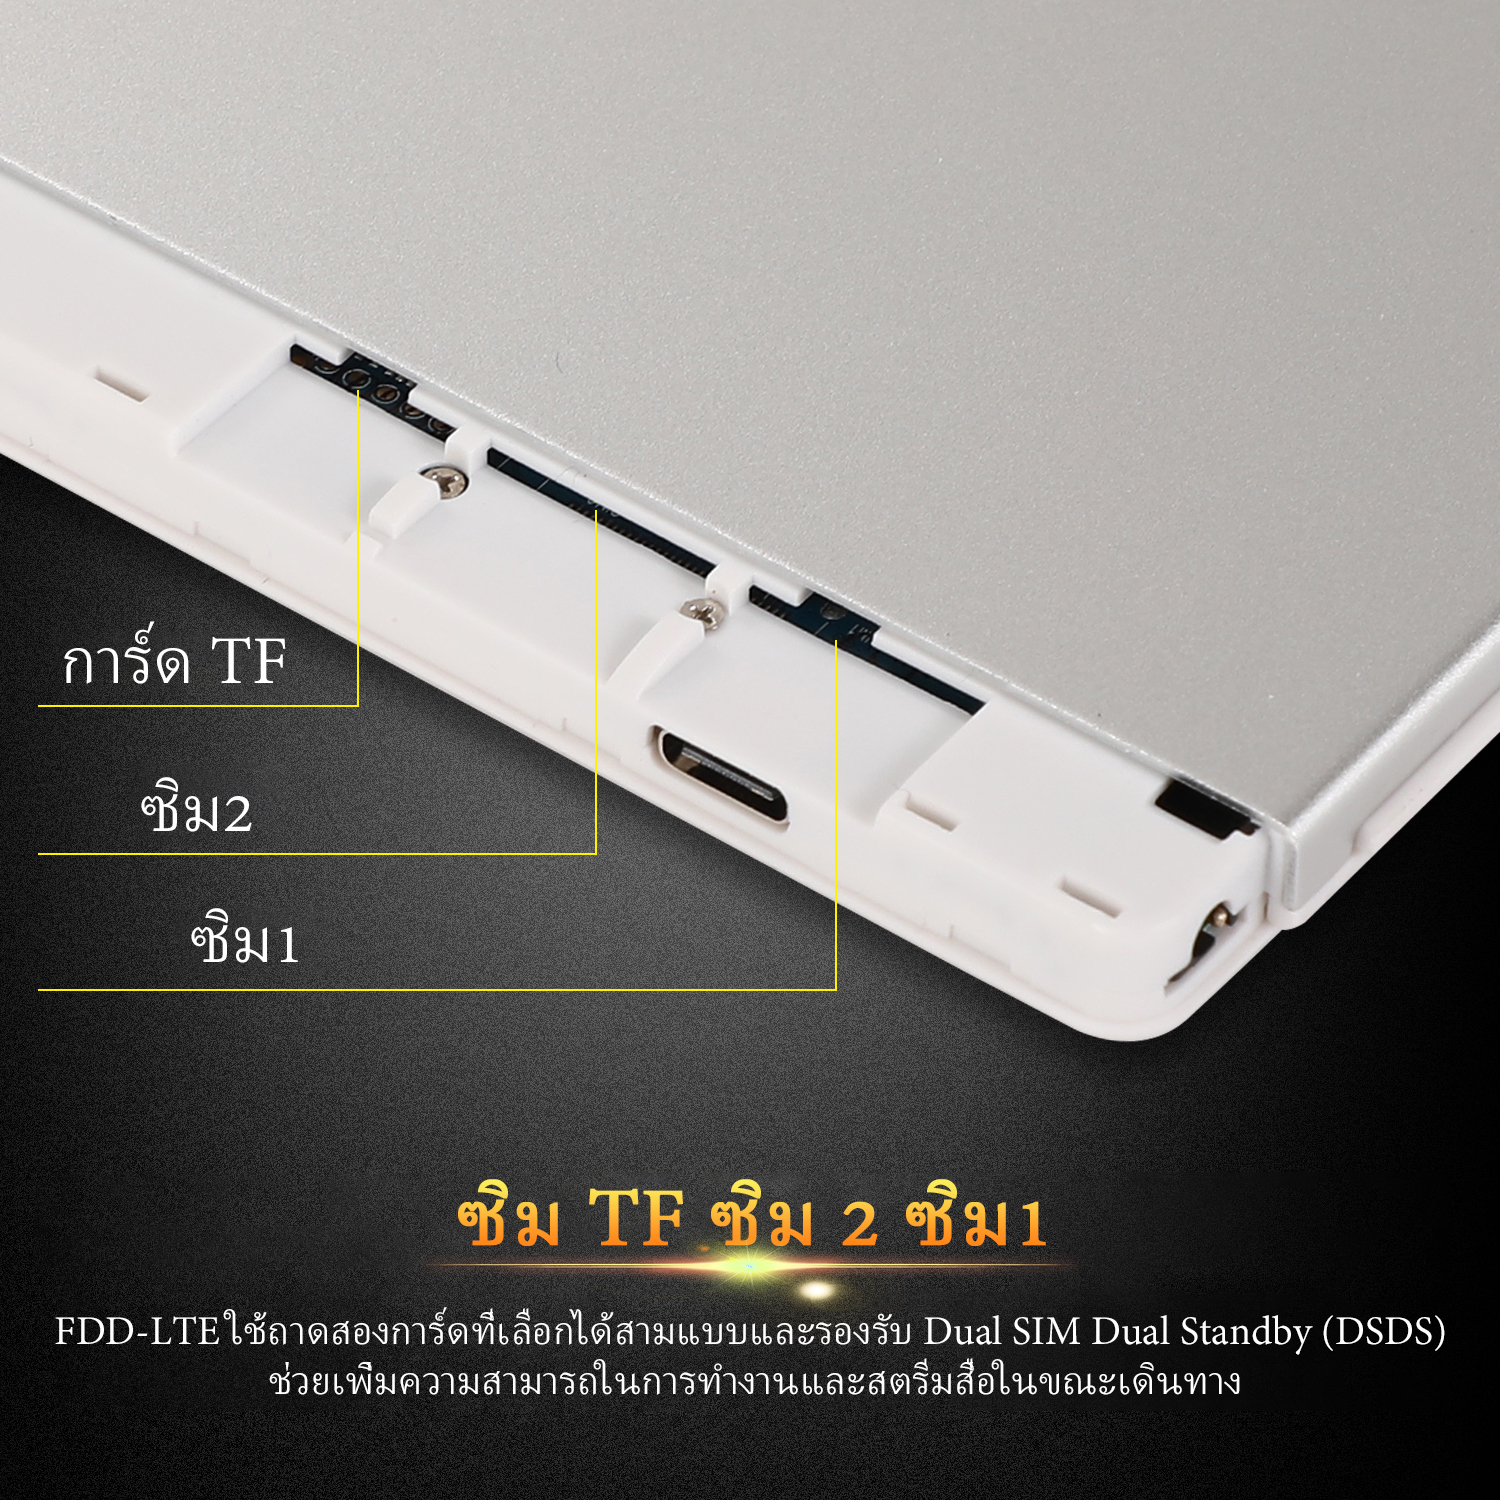 รูปภาพเพิ่มเติมเกี่ยวกับ แท็บเล็ต VIVO Pad Wifi โทรได้ 10.1นิ้ว แท็บเล็ตถูกๆ ซัมซุง Tablet RAM12G ROM512G Andorid10.0 แท็บเล็ต จัดส่งฟรี แทบเล็ตราคาถูก รองรับภาษาไทย แท็บเล็ตสำหรับเล่นเกมราคาถูก ไอเเพ็ด Tablet Full HD แท็บเล็ตราคาถูกๆ แท็บเล็ตราคาถูกรุ่นล่าสุด